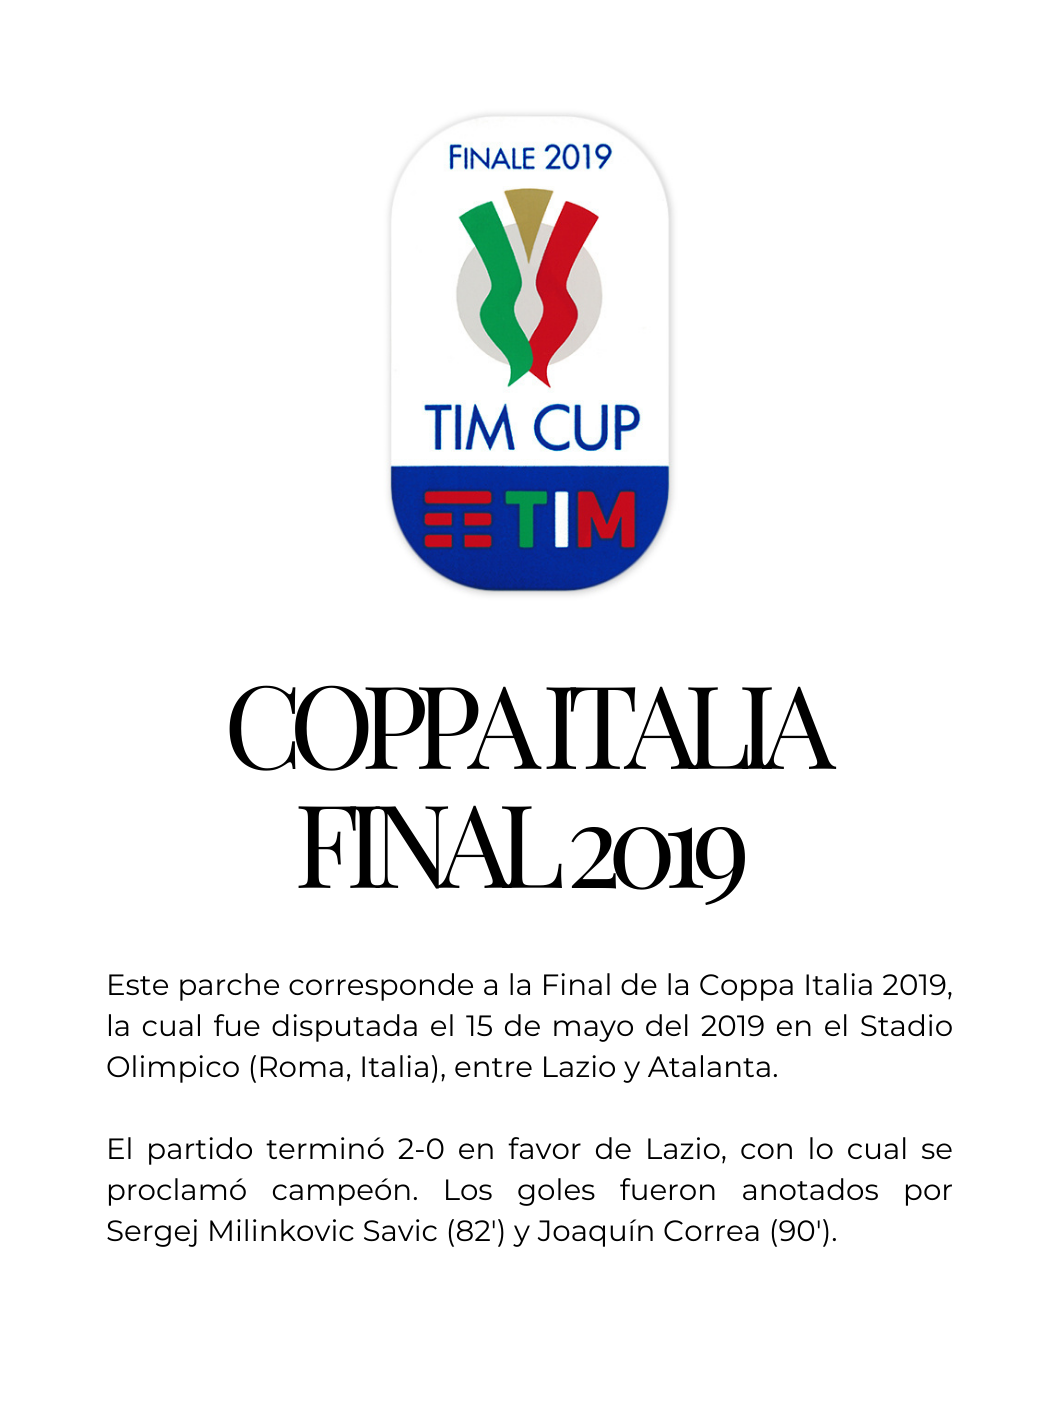 Parche Coppa Italia Final 2019